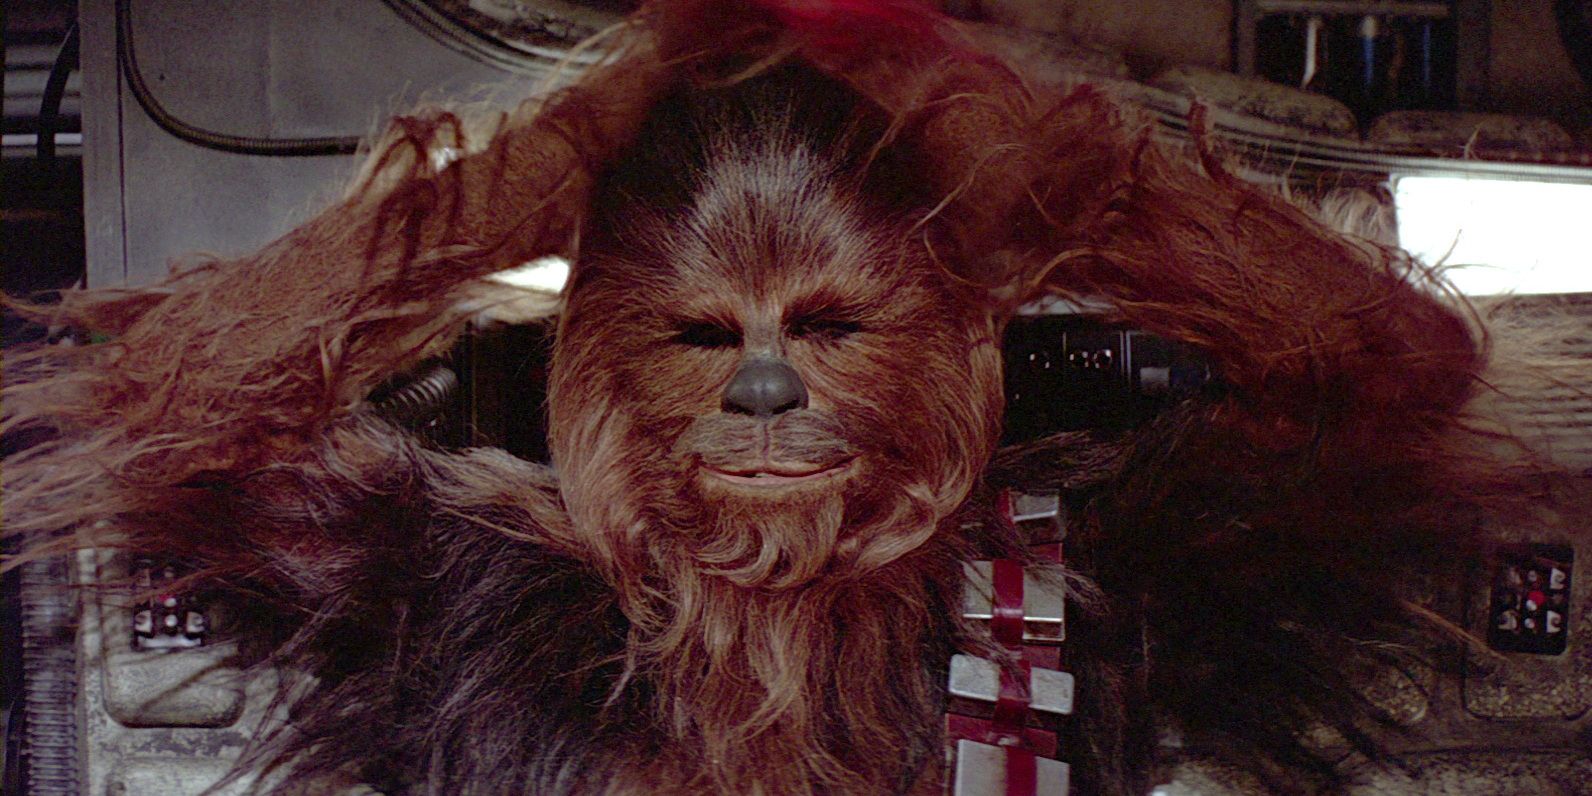 Bu Chewbacca'nın Karısı, Han Solo Filminden Sahne Arkası Resminde mi?